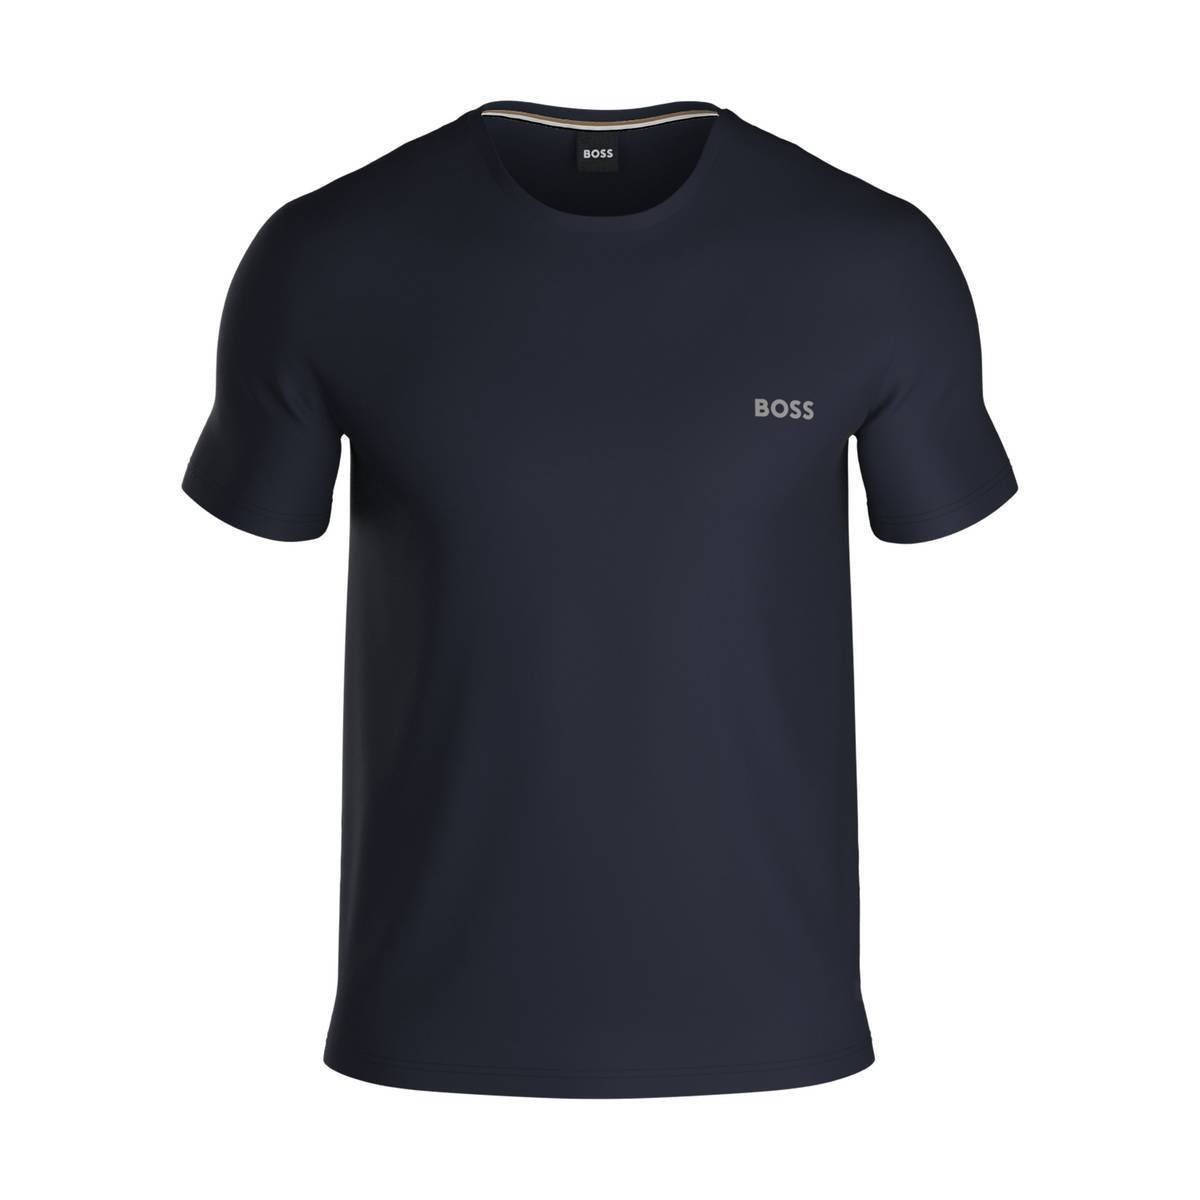 BOSS T-Shirt Herren T-Shirt - Unterziehshirt Mix&Match, Dunkelblau